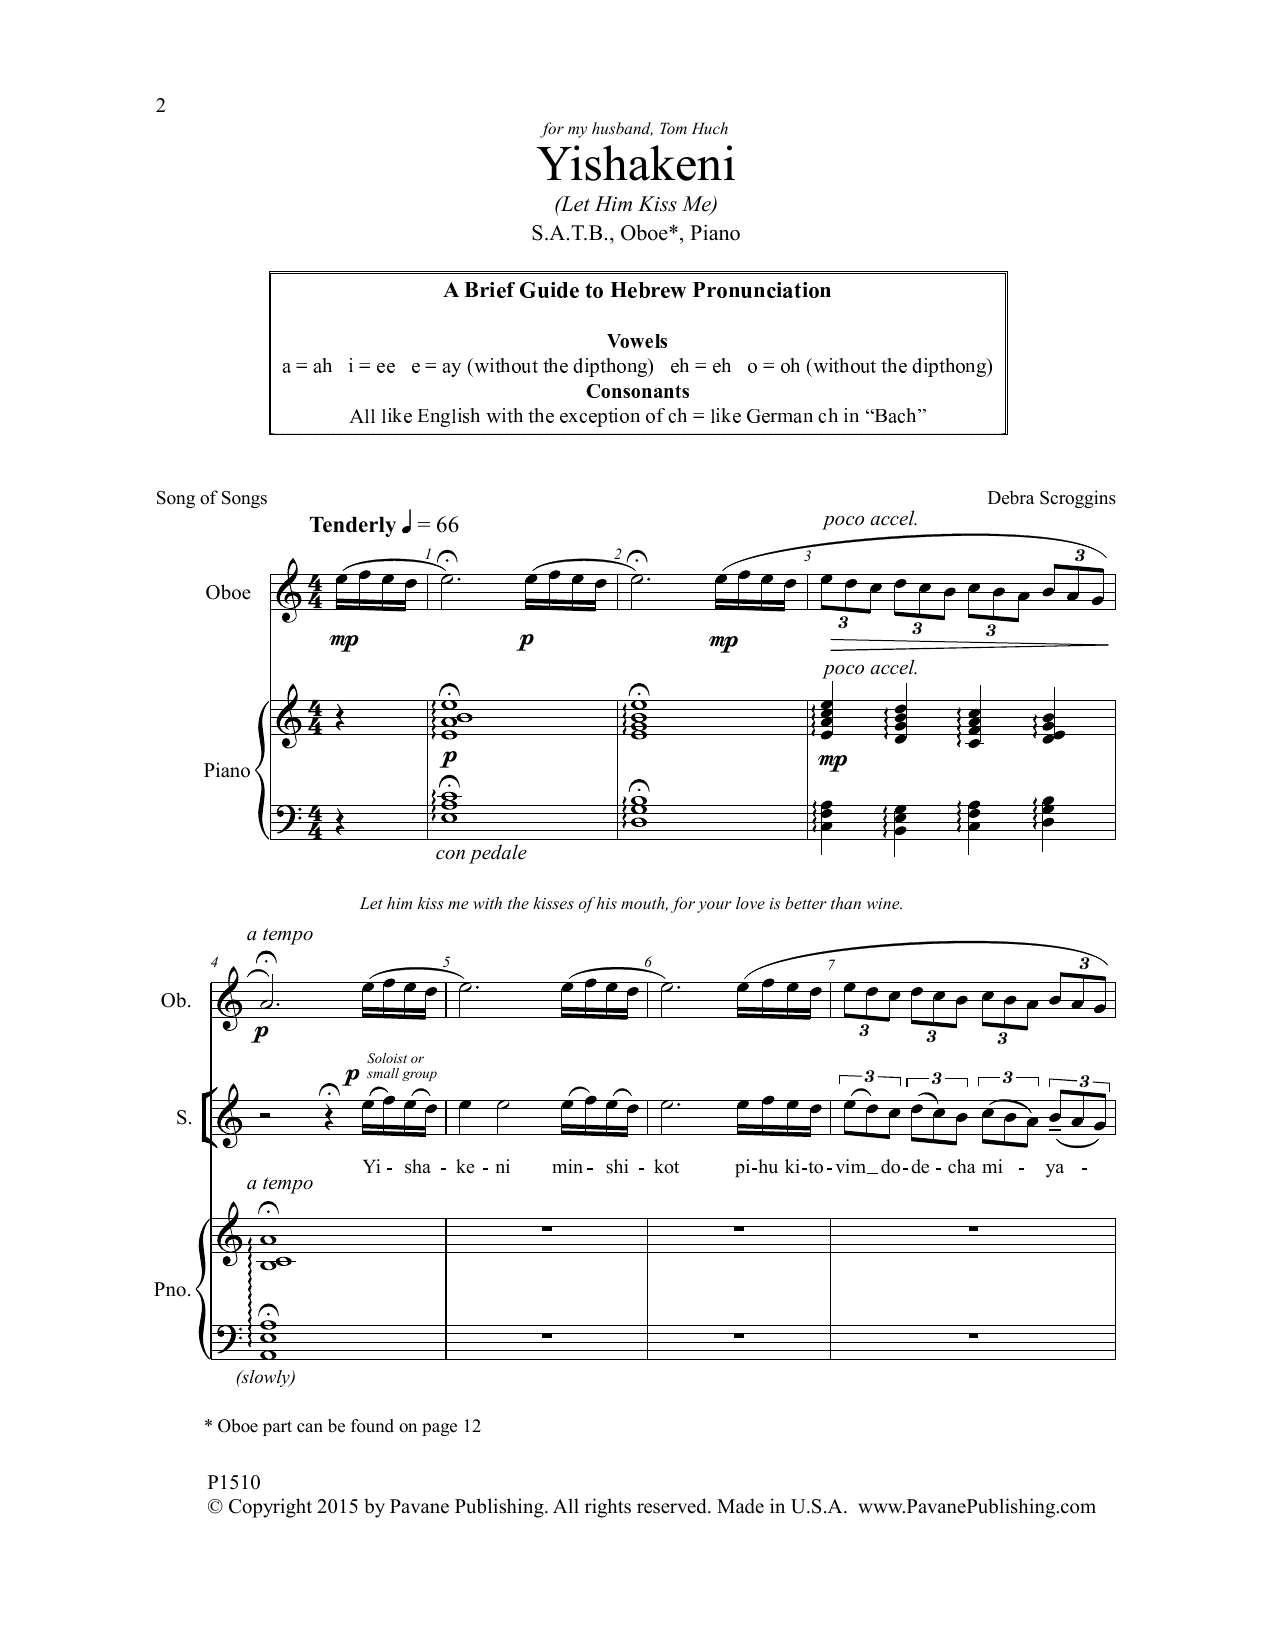 Debra Scroggins Yishakeni Sheet Music Notes & Chords for Choral - Download or Print PDF